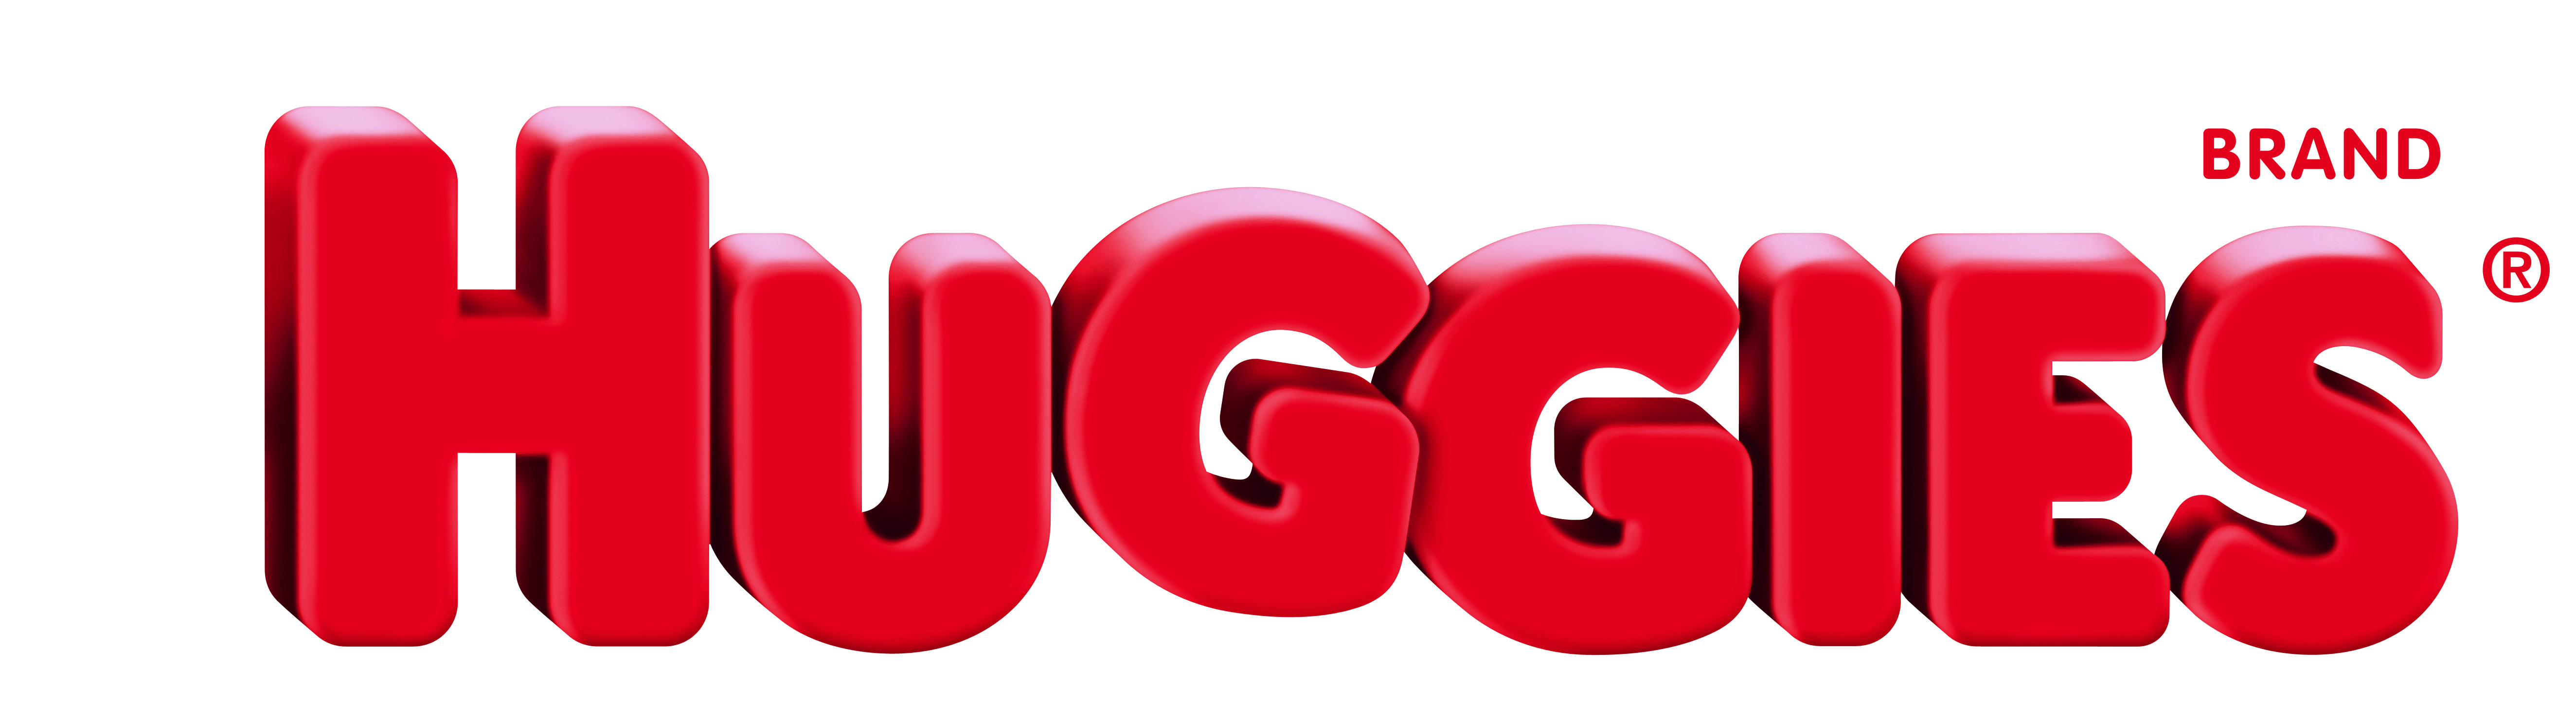 Huggies Logo - Huggies Brand Red Logo - Veep Veep